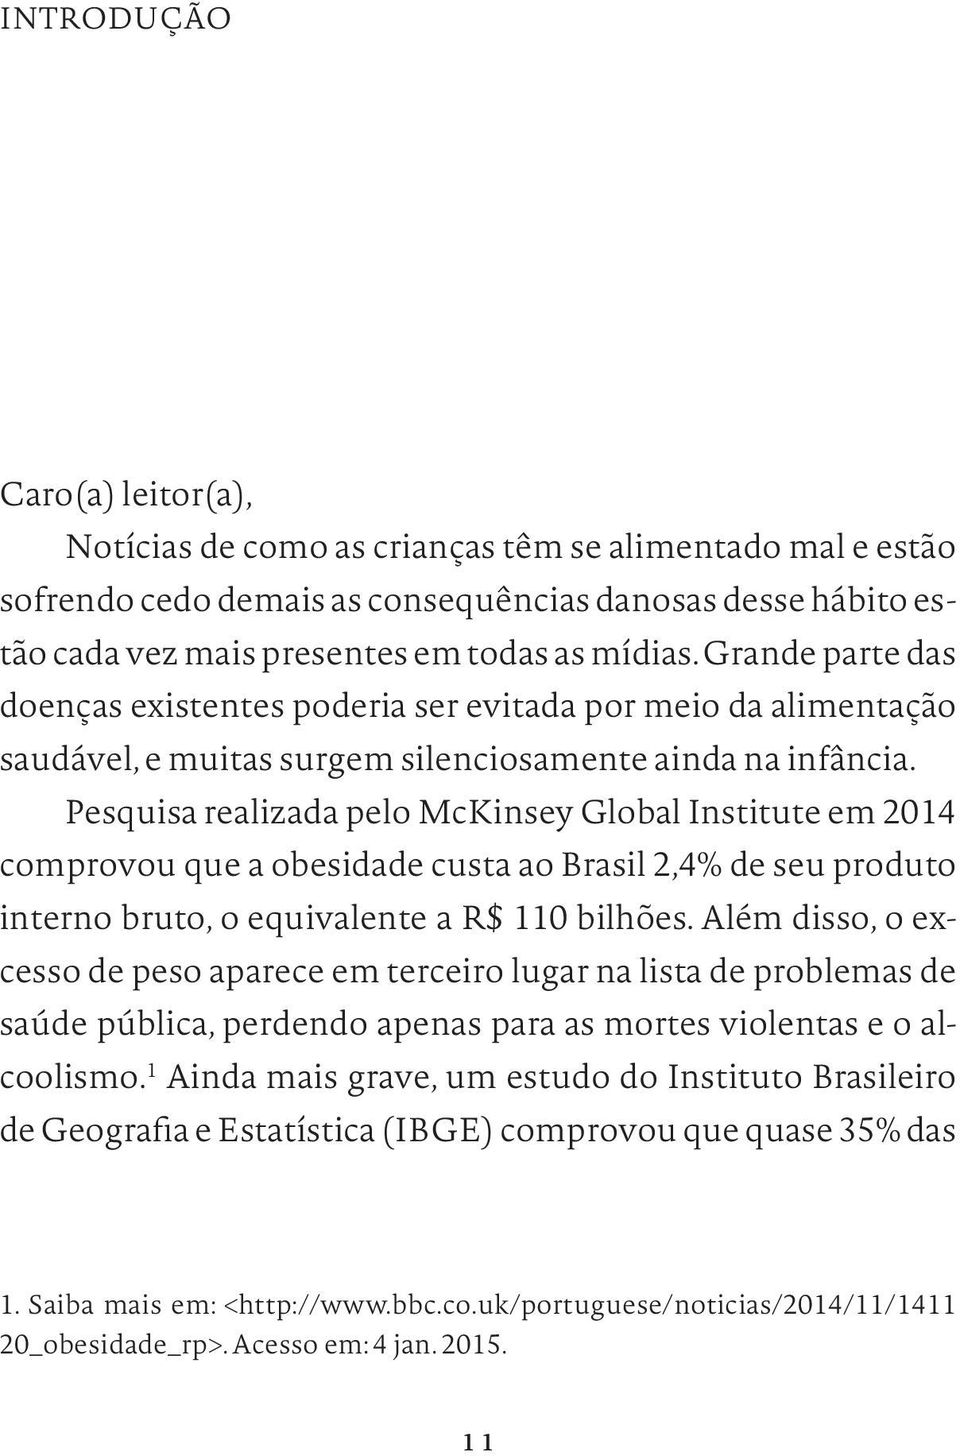 Pesquisa realizada pelo McKinsey Global Institute em 2014 comprovou que a obesidade custa ao Brasil 2,4% de seu produto interno bruto, o equivalente a R$ 110 bilhões.